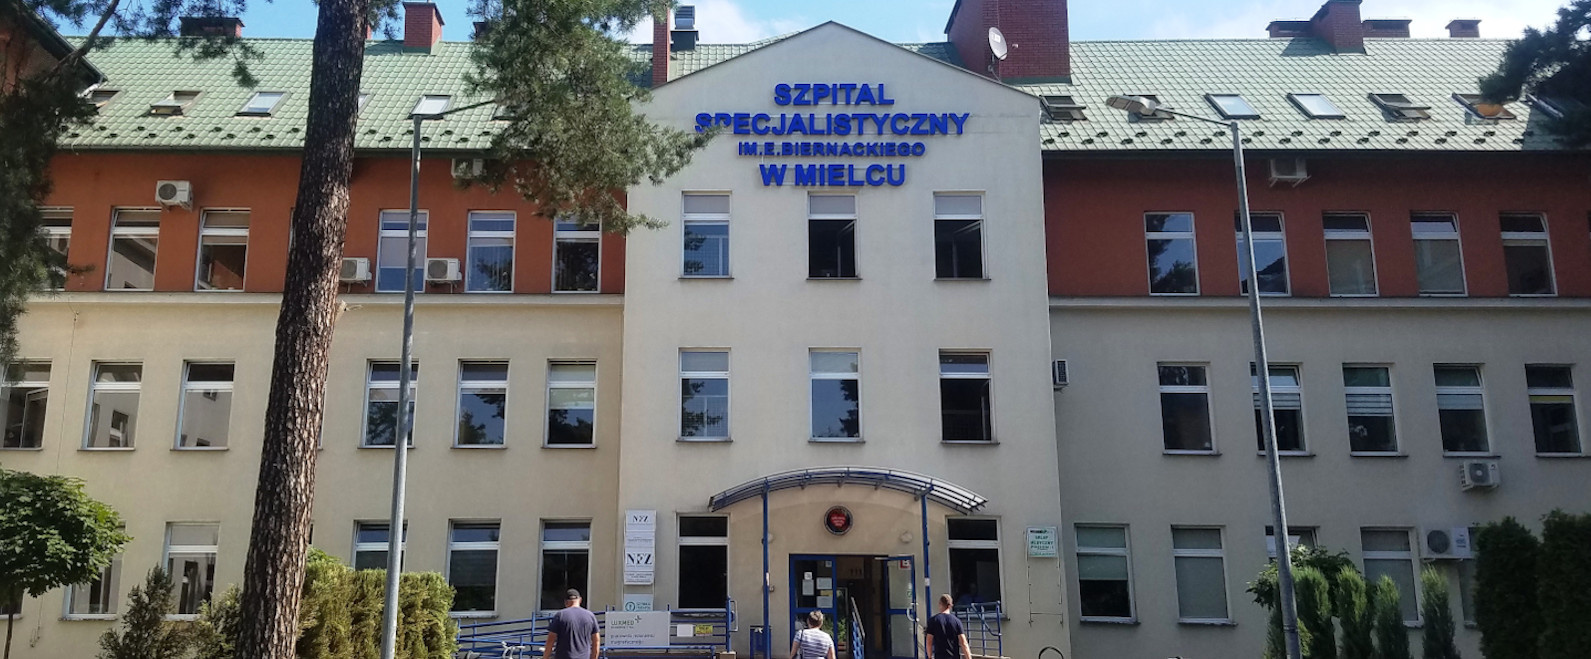 Grupa Azoty S.A. przekazała 100 tys. zł darowizny dla szpitala w Mielcu